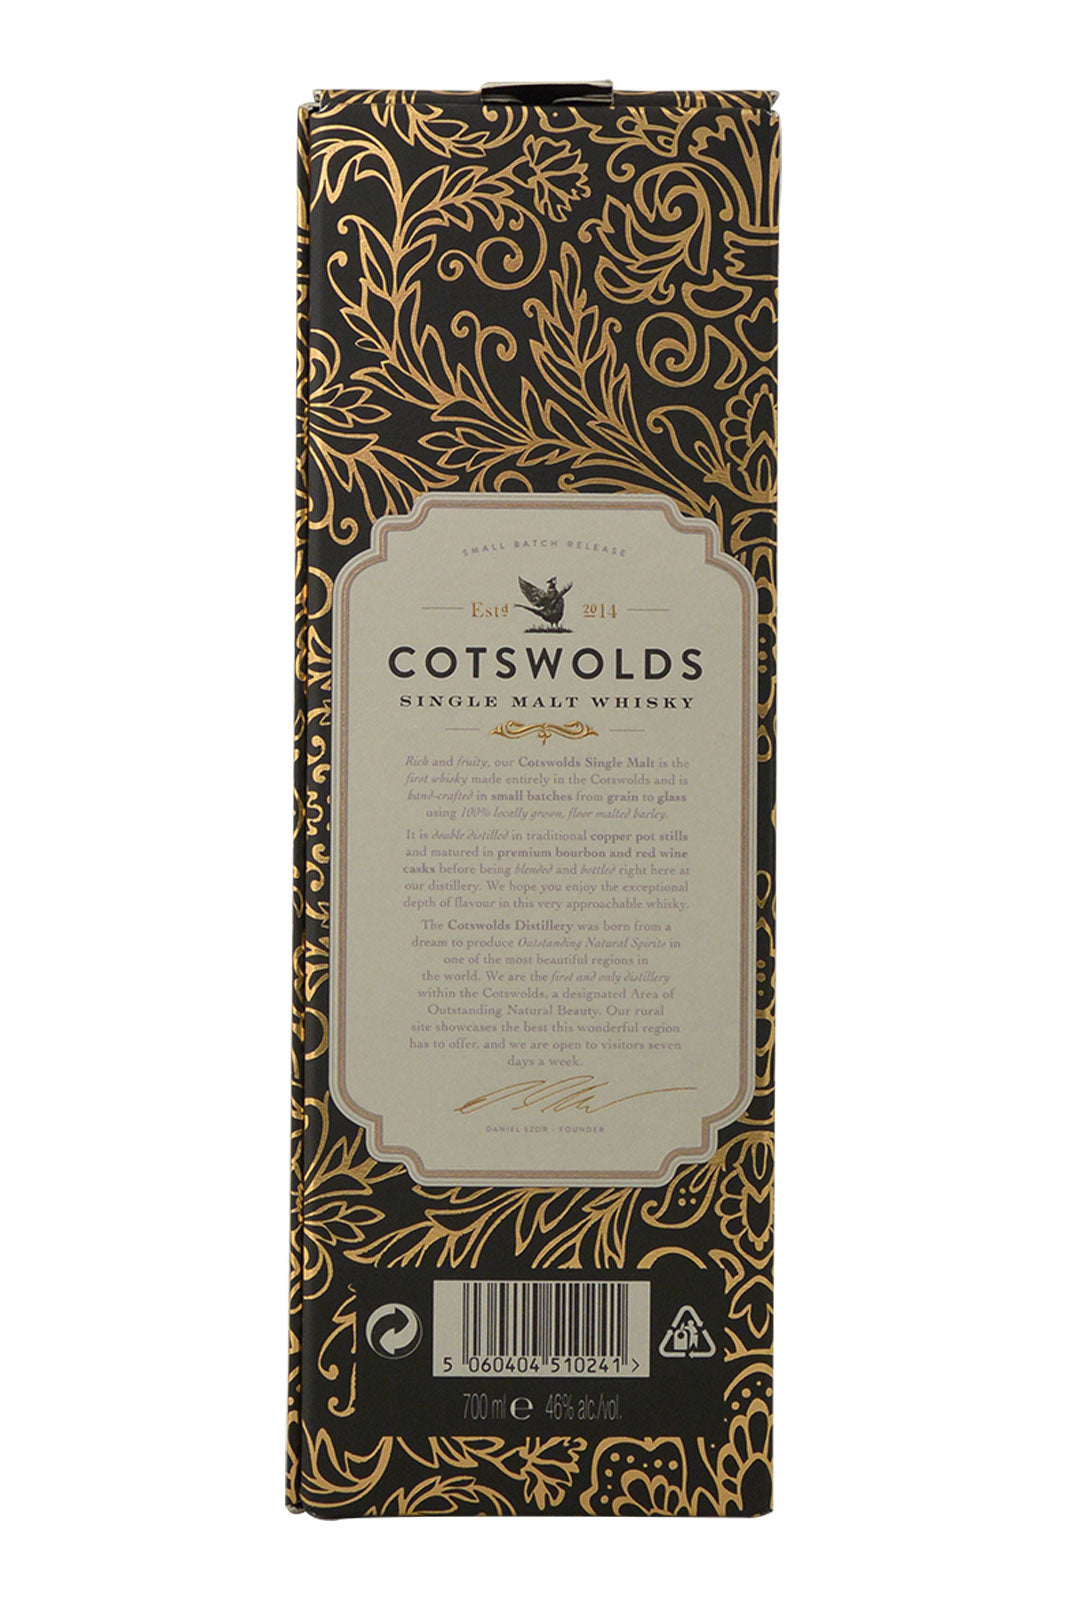 Cotswolds Single Malt Signature